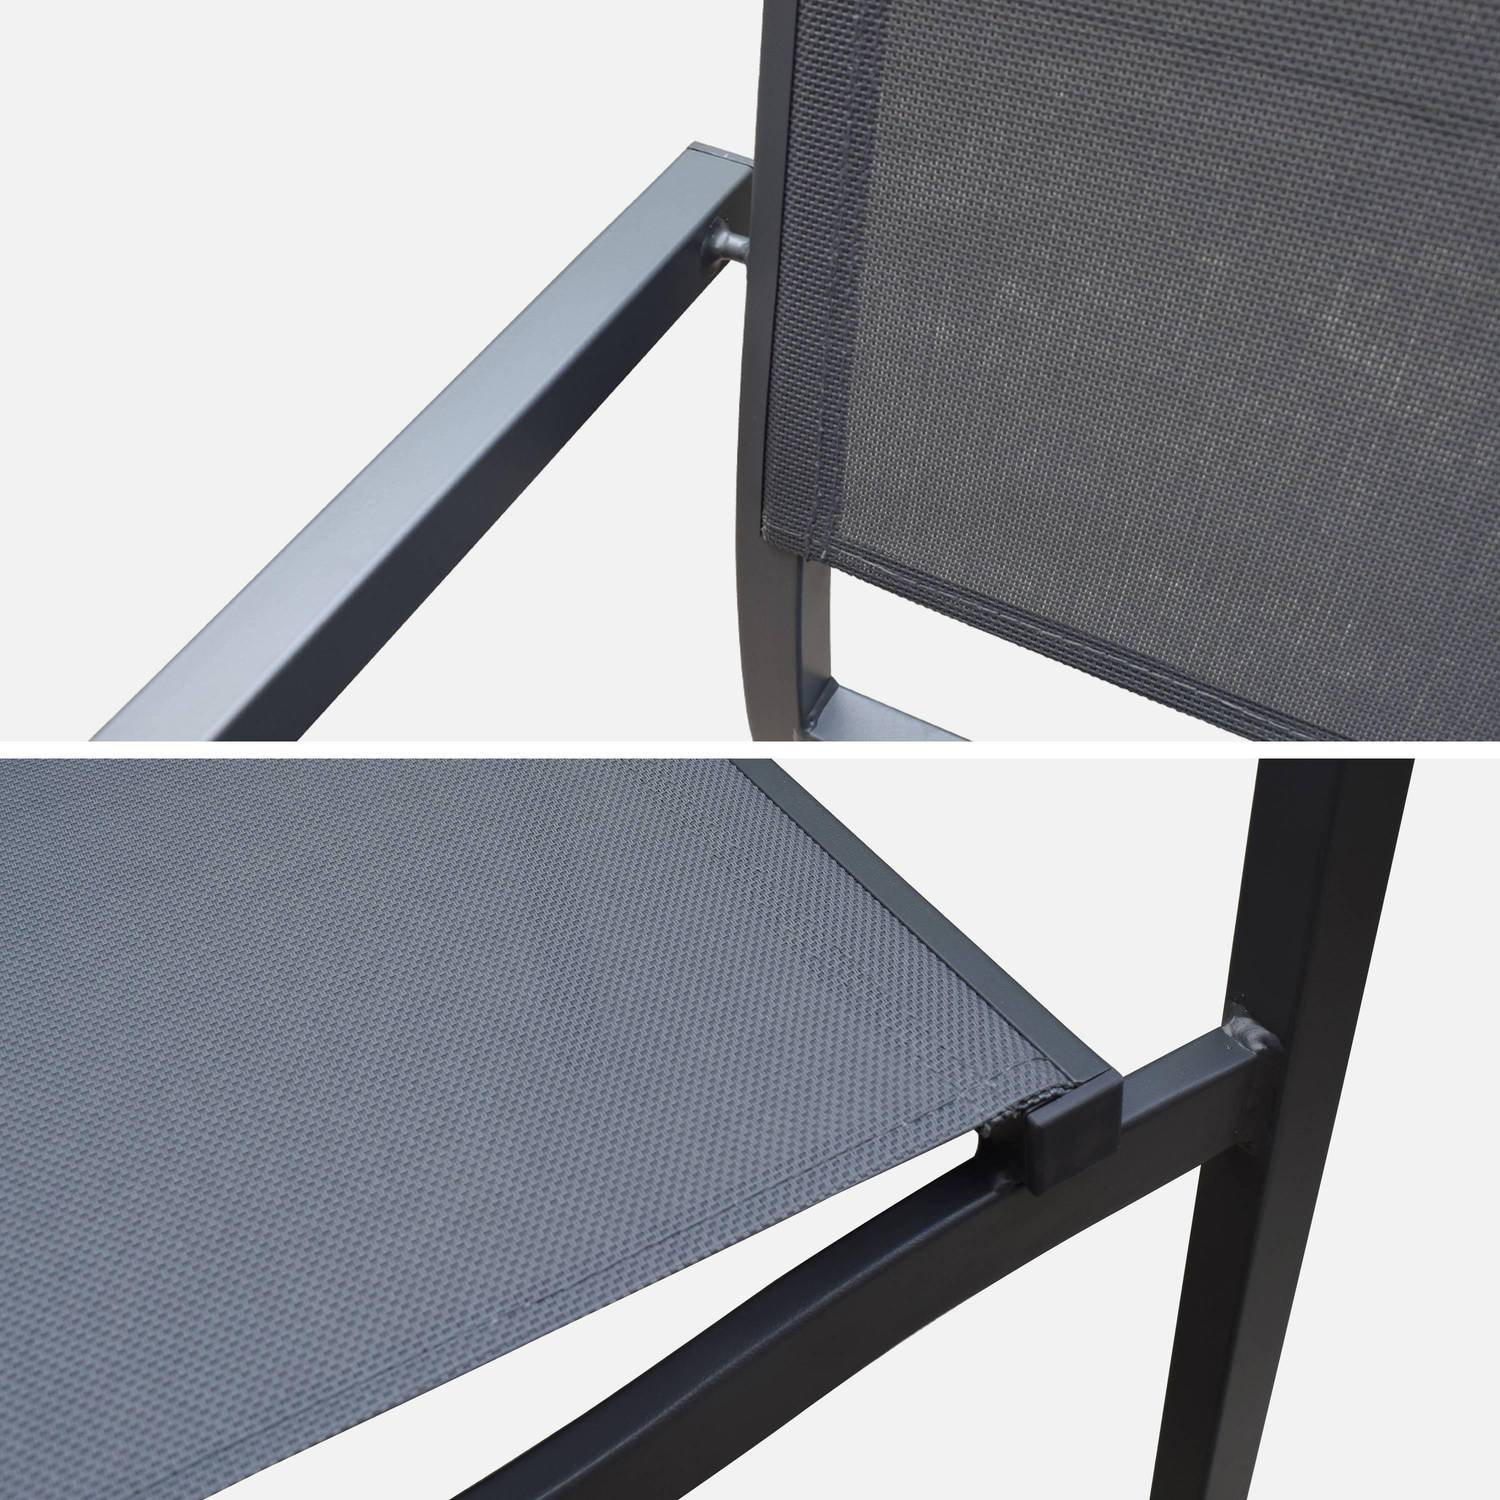 Table de jardin aluminium 160/240cm avec 8 chaises empilables aluminium et textilène Photo6